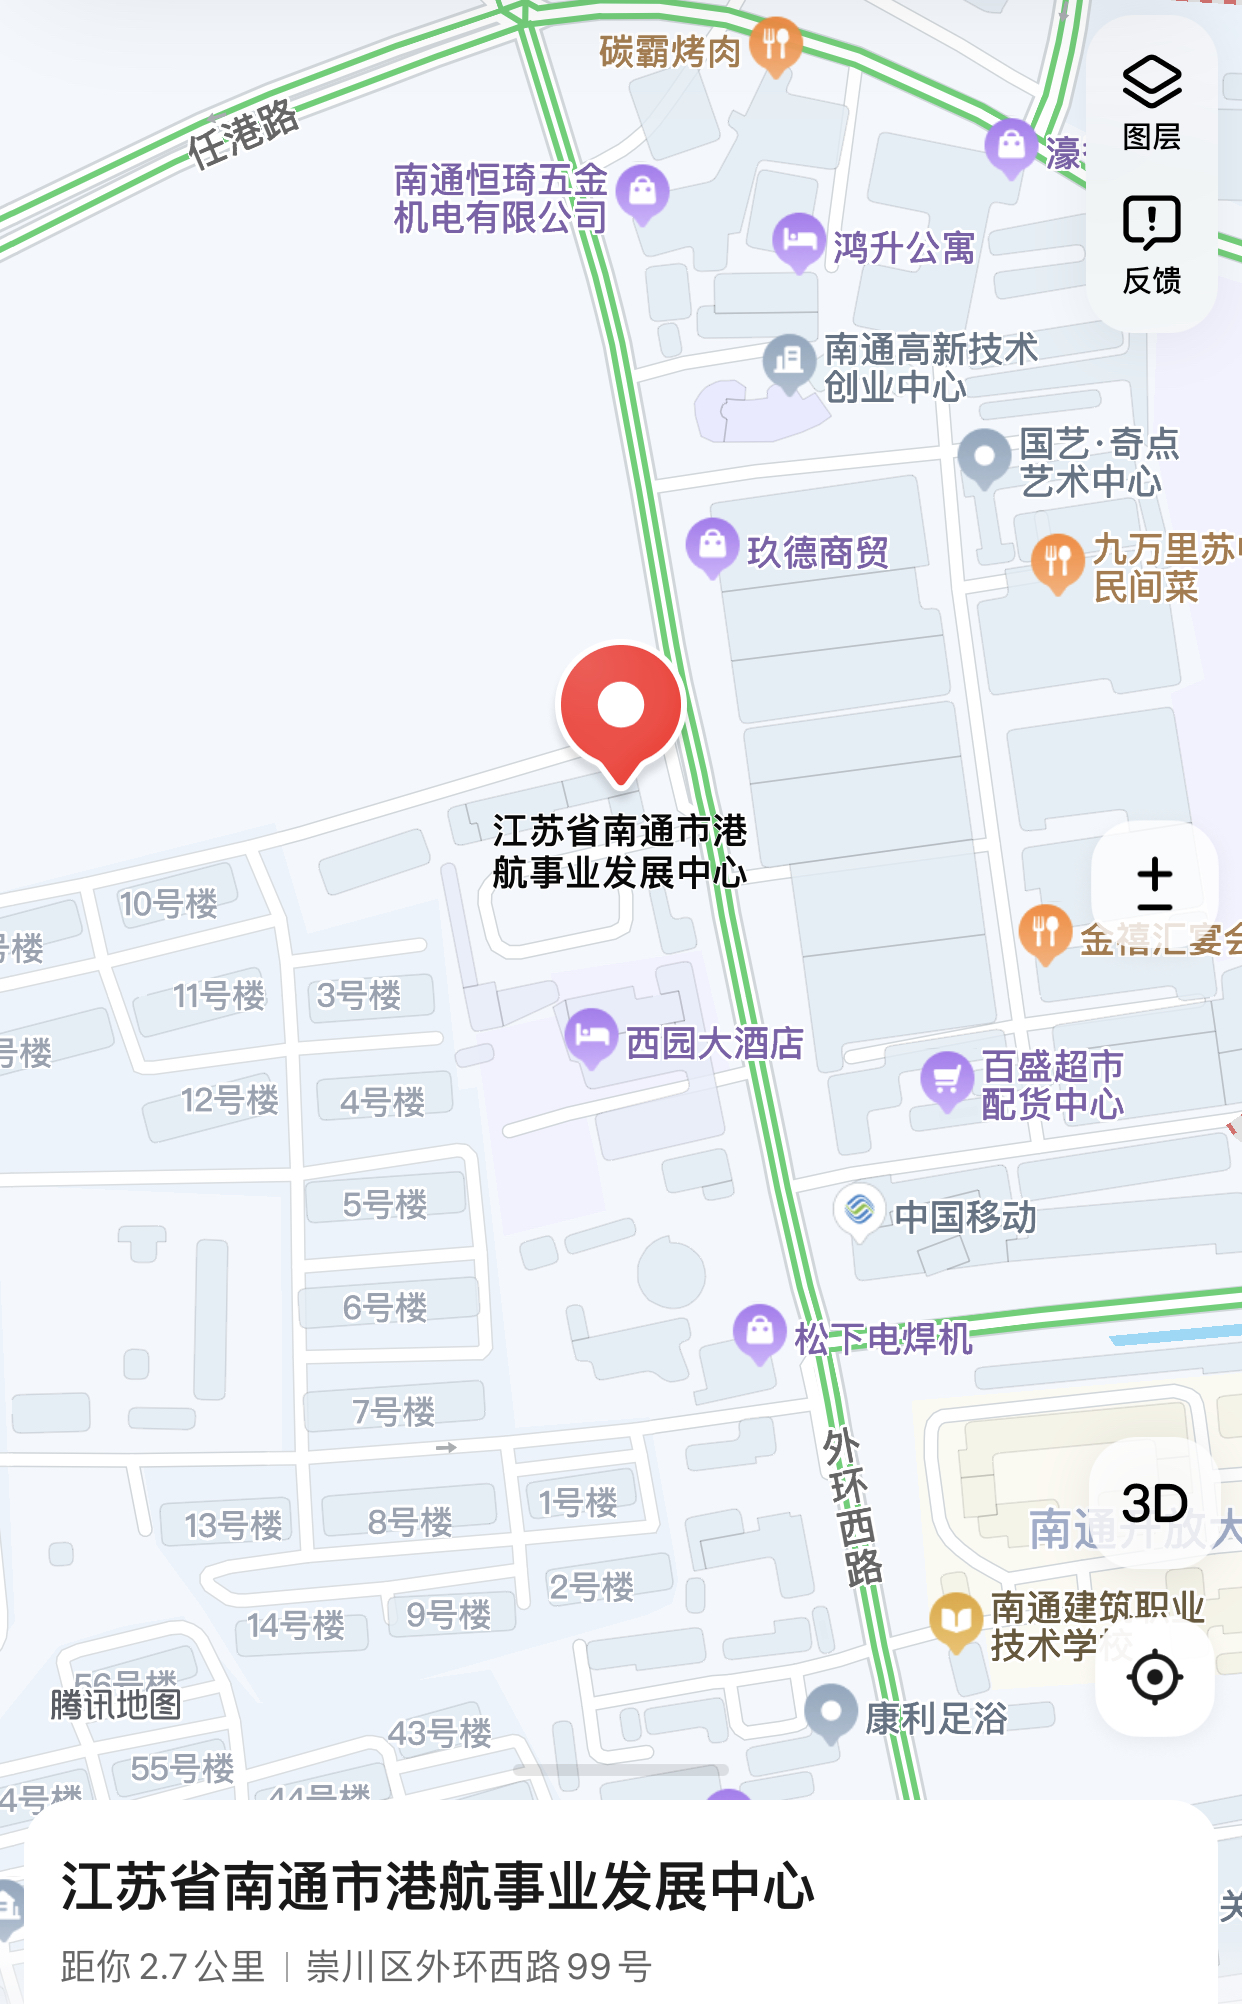 南通市港航事业发展中心.jpg